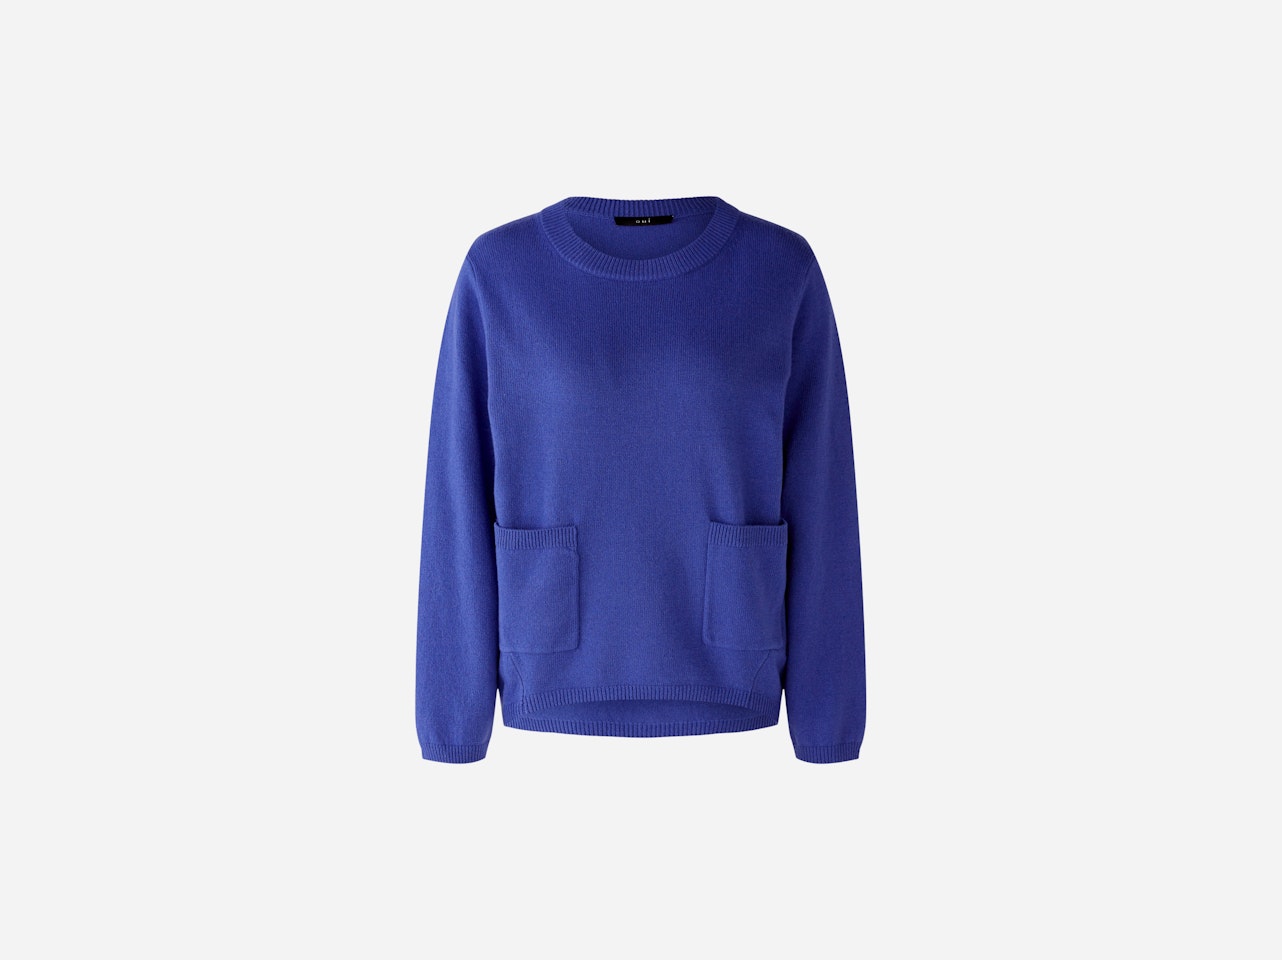 Bild 1 von Jumper wool blend in blue | Oui